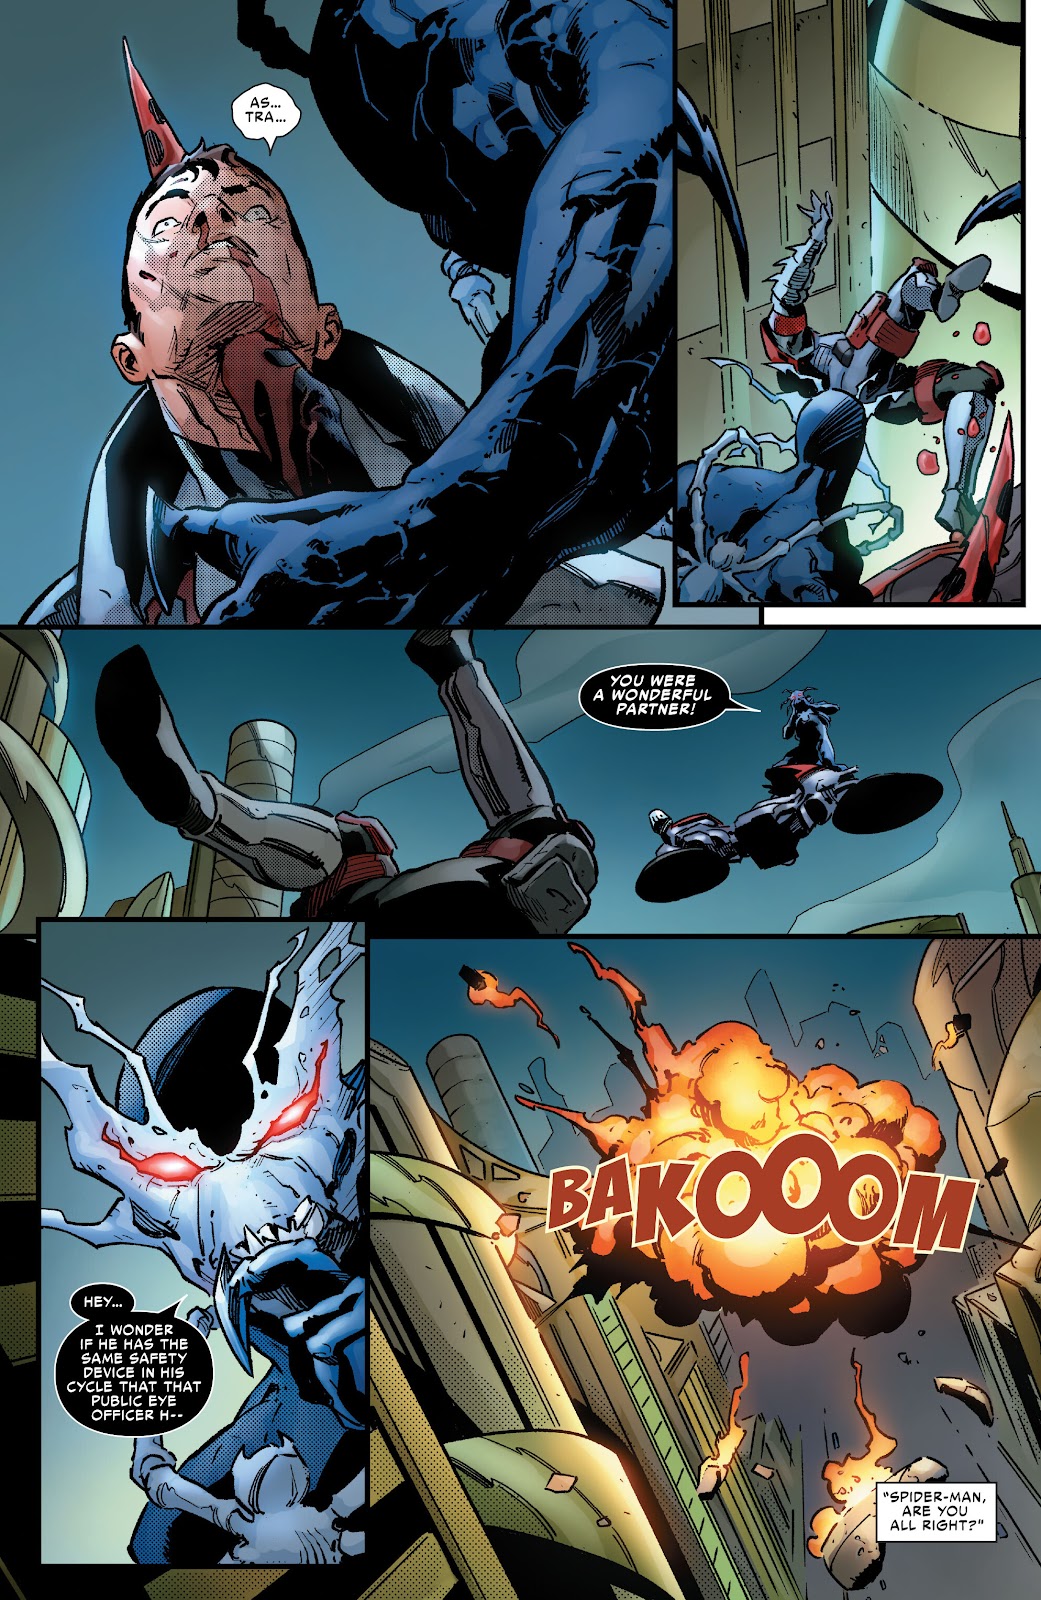 Symbiote Spider-Man 2099 issue 1 - Page 31